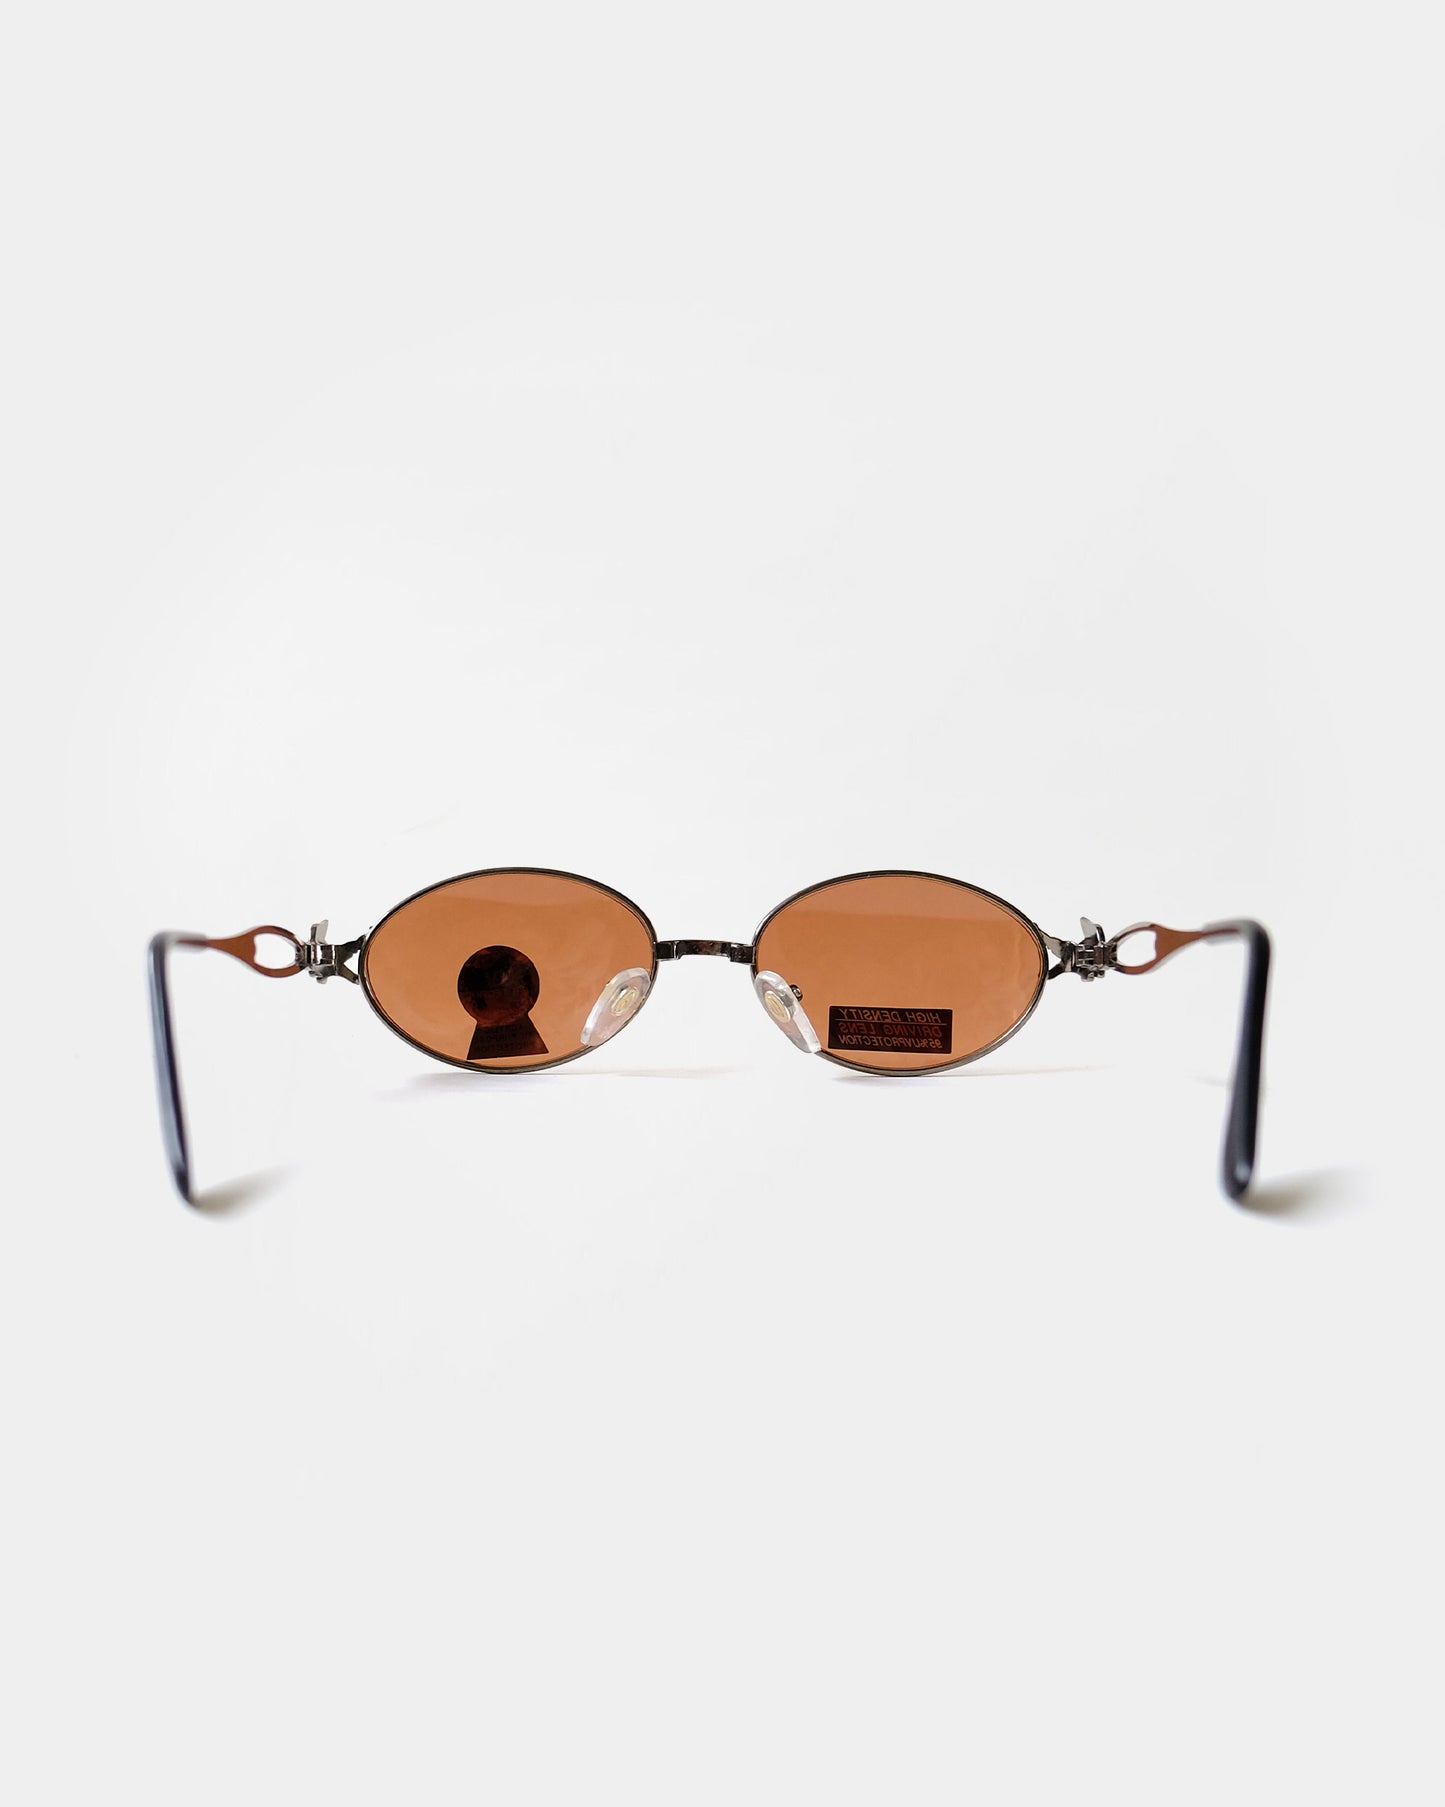 NOS 90s Metal Frame sunglasses